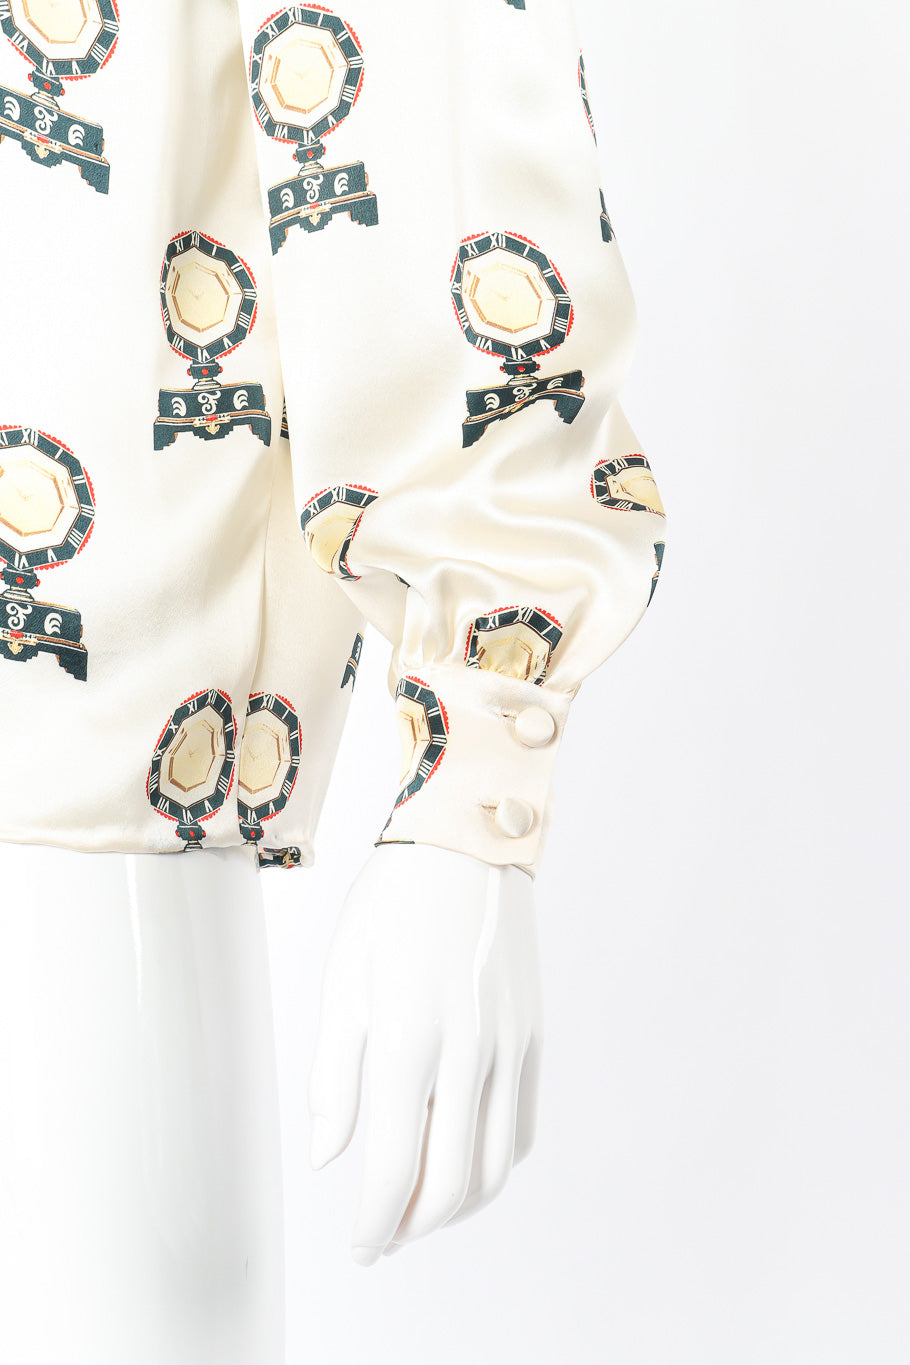 Vintage André Laug Roman Clock Motif Silk Blouse sleeve closeup on mannequin @Recessla